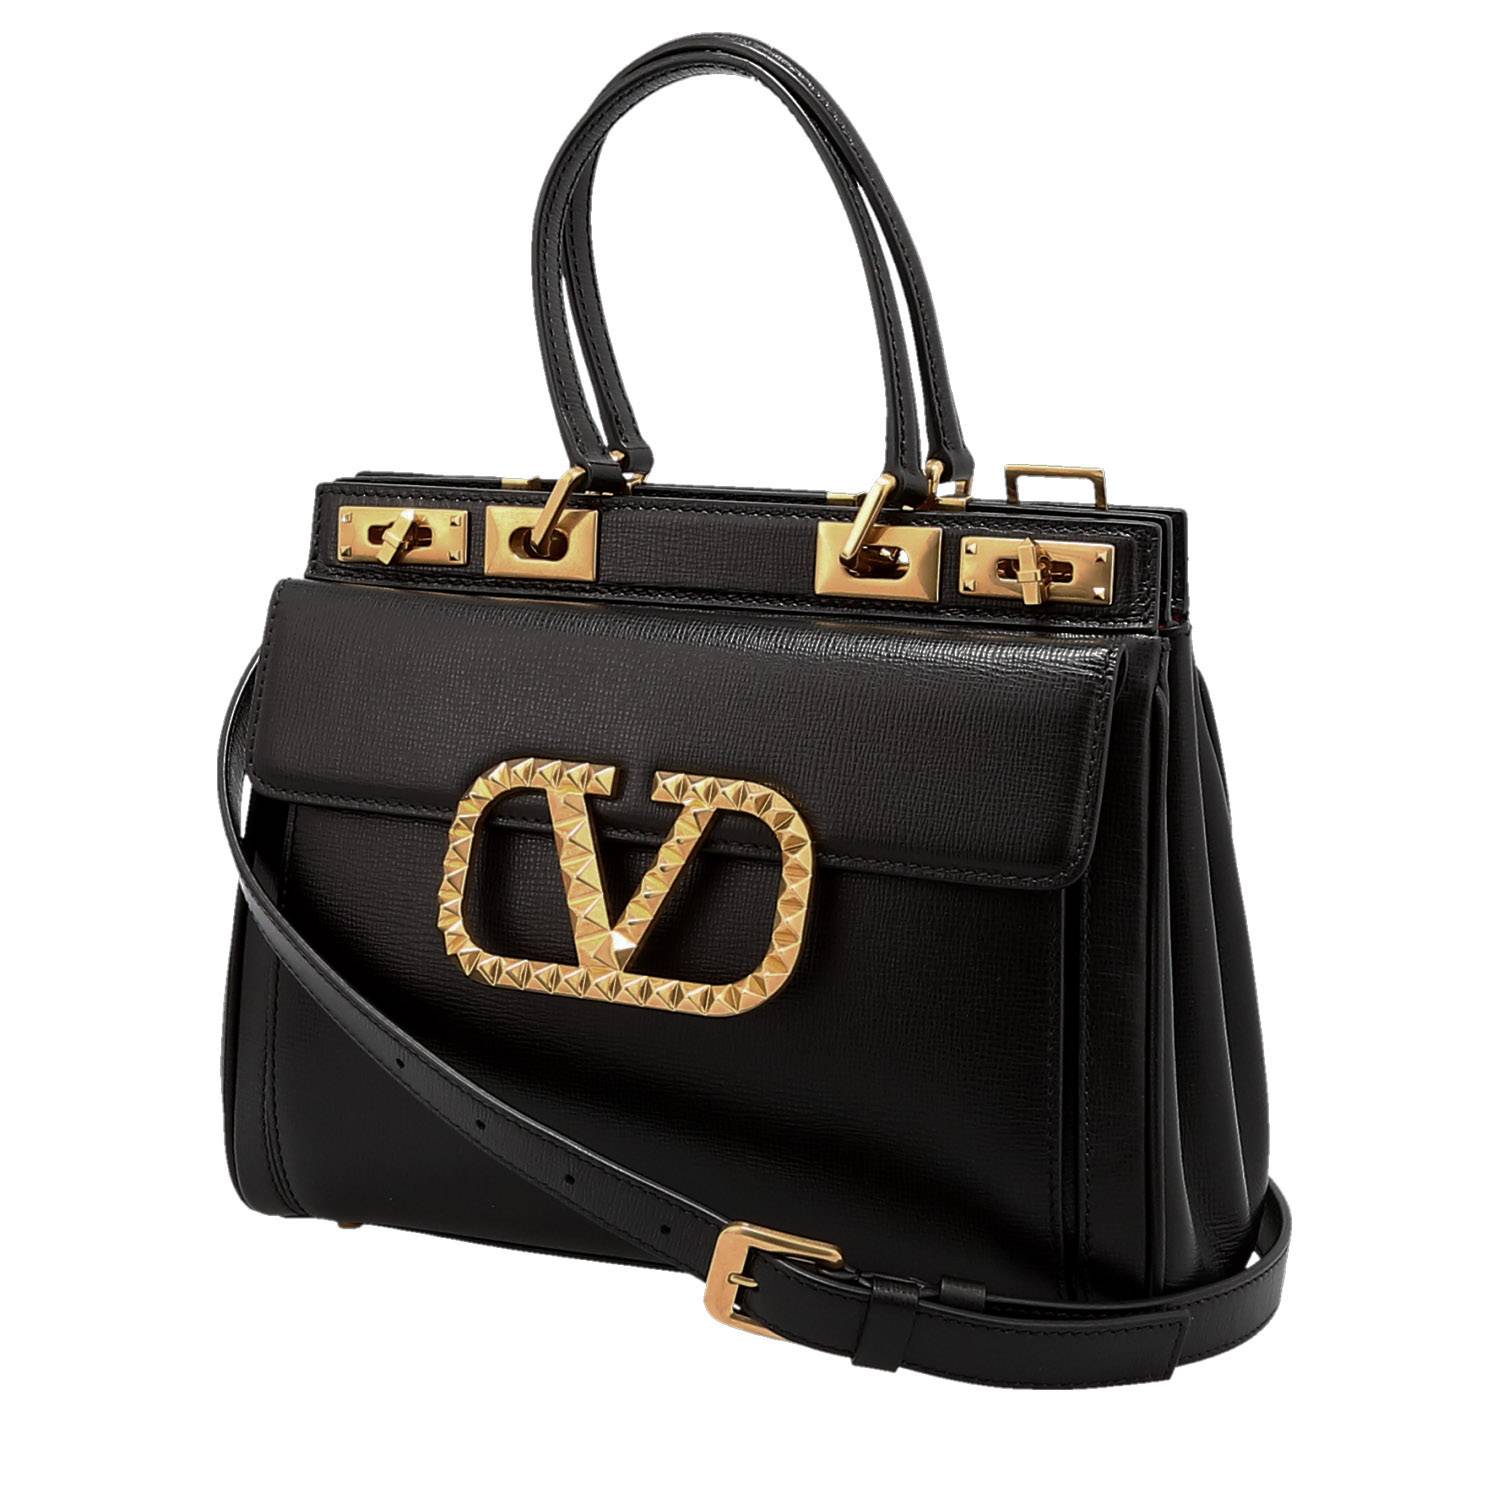 VALENTINO burgundy leather Rockstud VA VA VOOM LARGE TOTE Bag